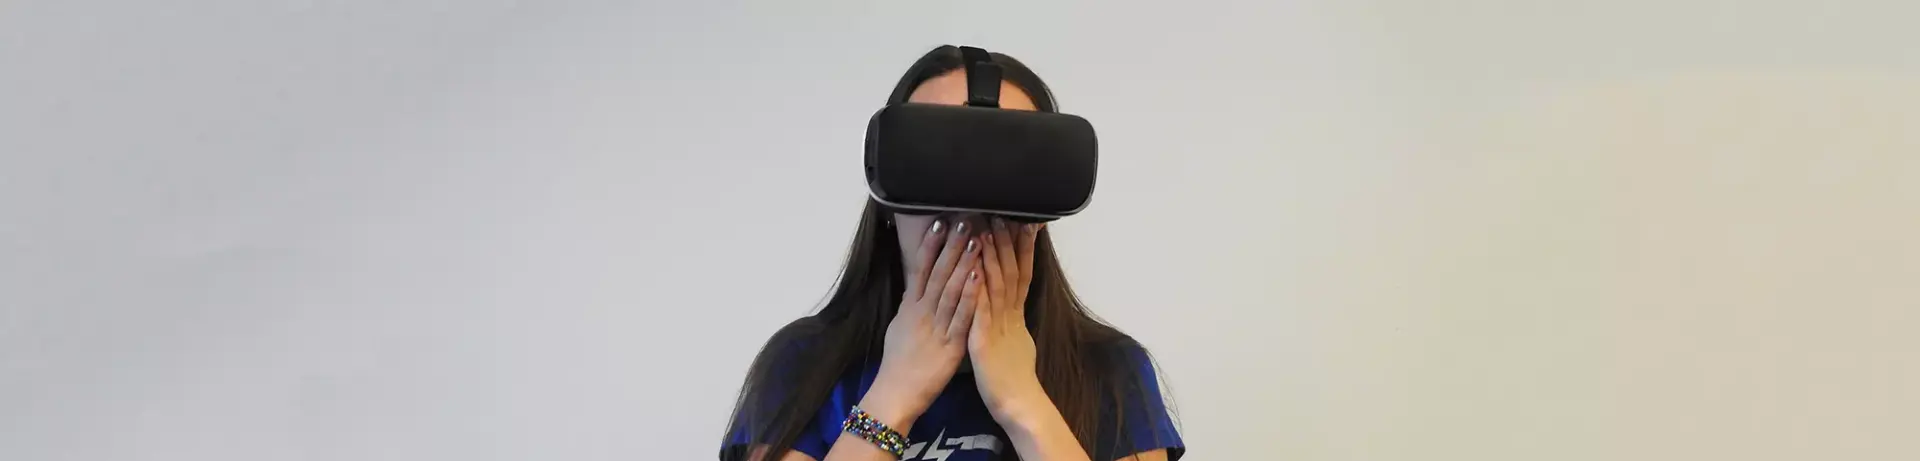 Клуб виртуальной реальности «ГравитацияКлуб»